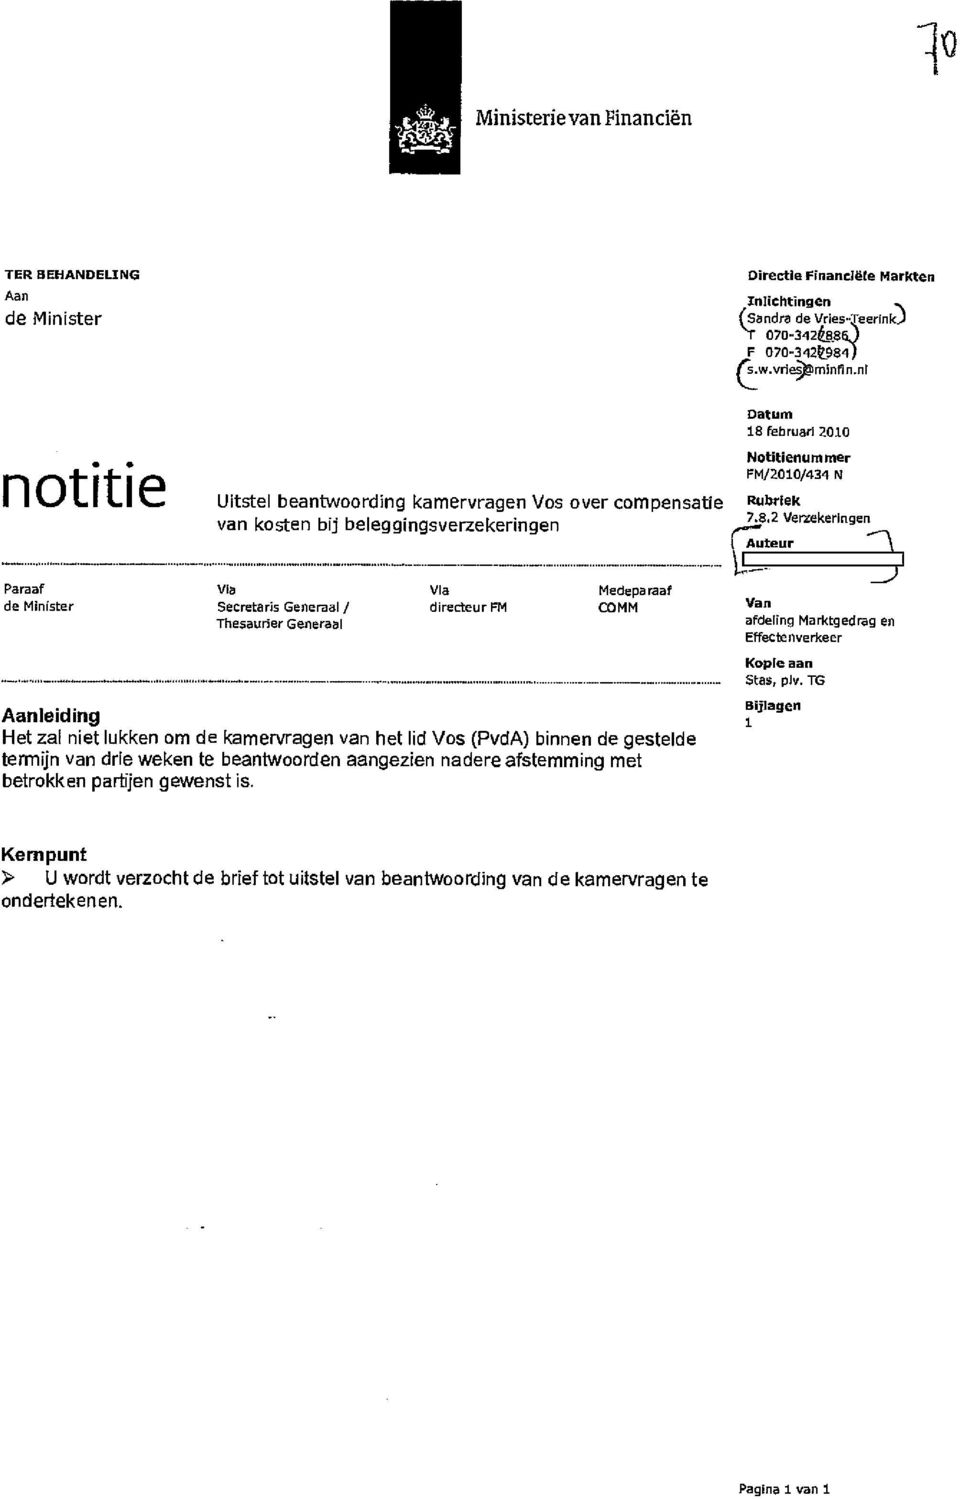 februari 2010 notitie Uitstel beantwoording kamervragen Vos over compensatie van kosten bij beleggingsverzekeringen Notitienurnmer FM/2010/434 N Rubriek 7.8.